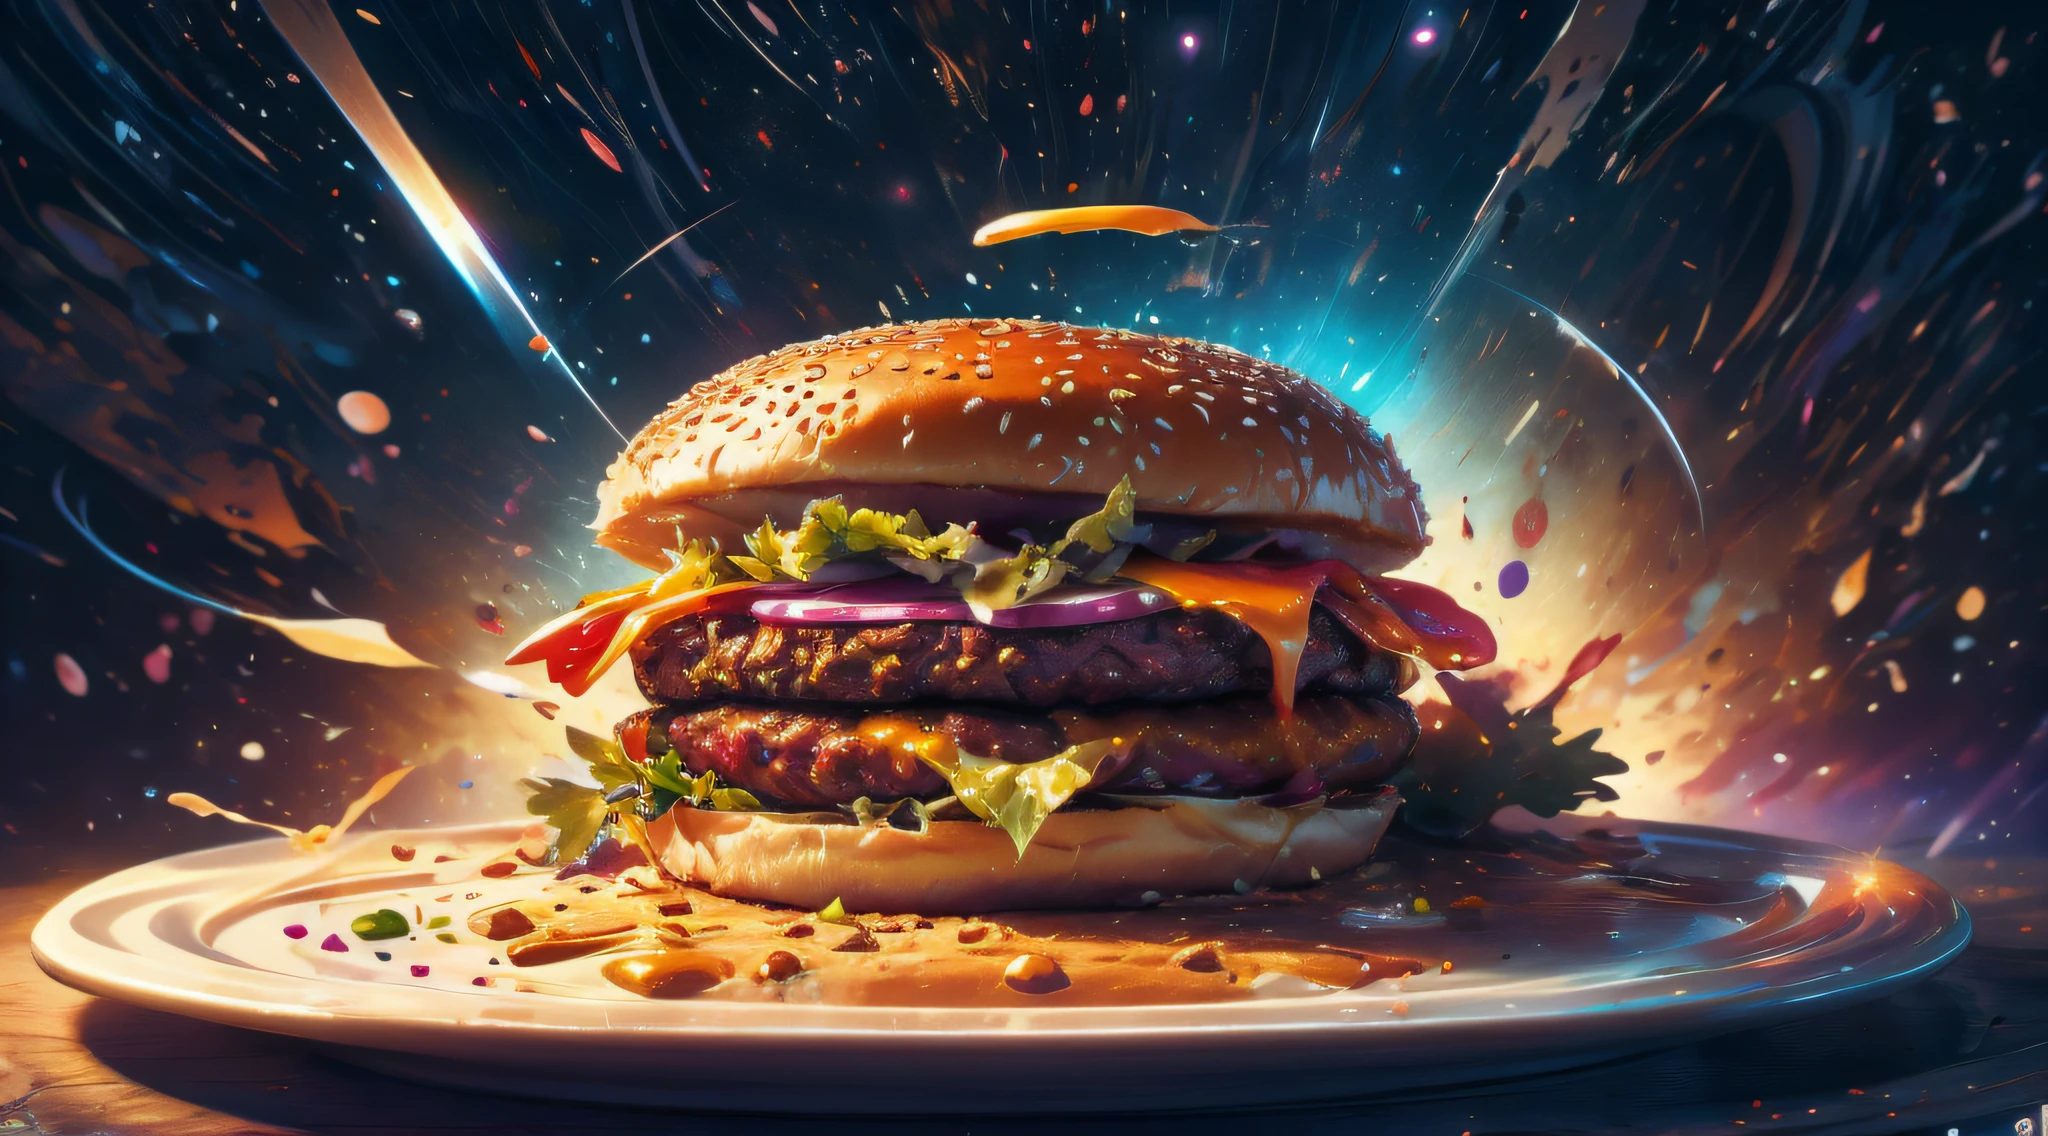 un hamburger fait de galaxie et de nébuleuse, assis dans une assiette faite de cosmos, Règle des tiers, meilleurs détails, complexe, ambiance riche, Photo imaginative,